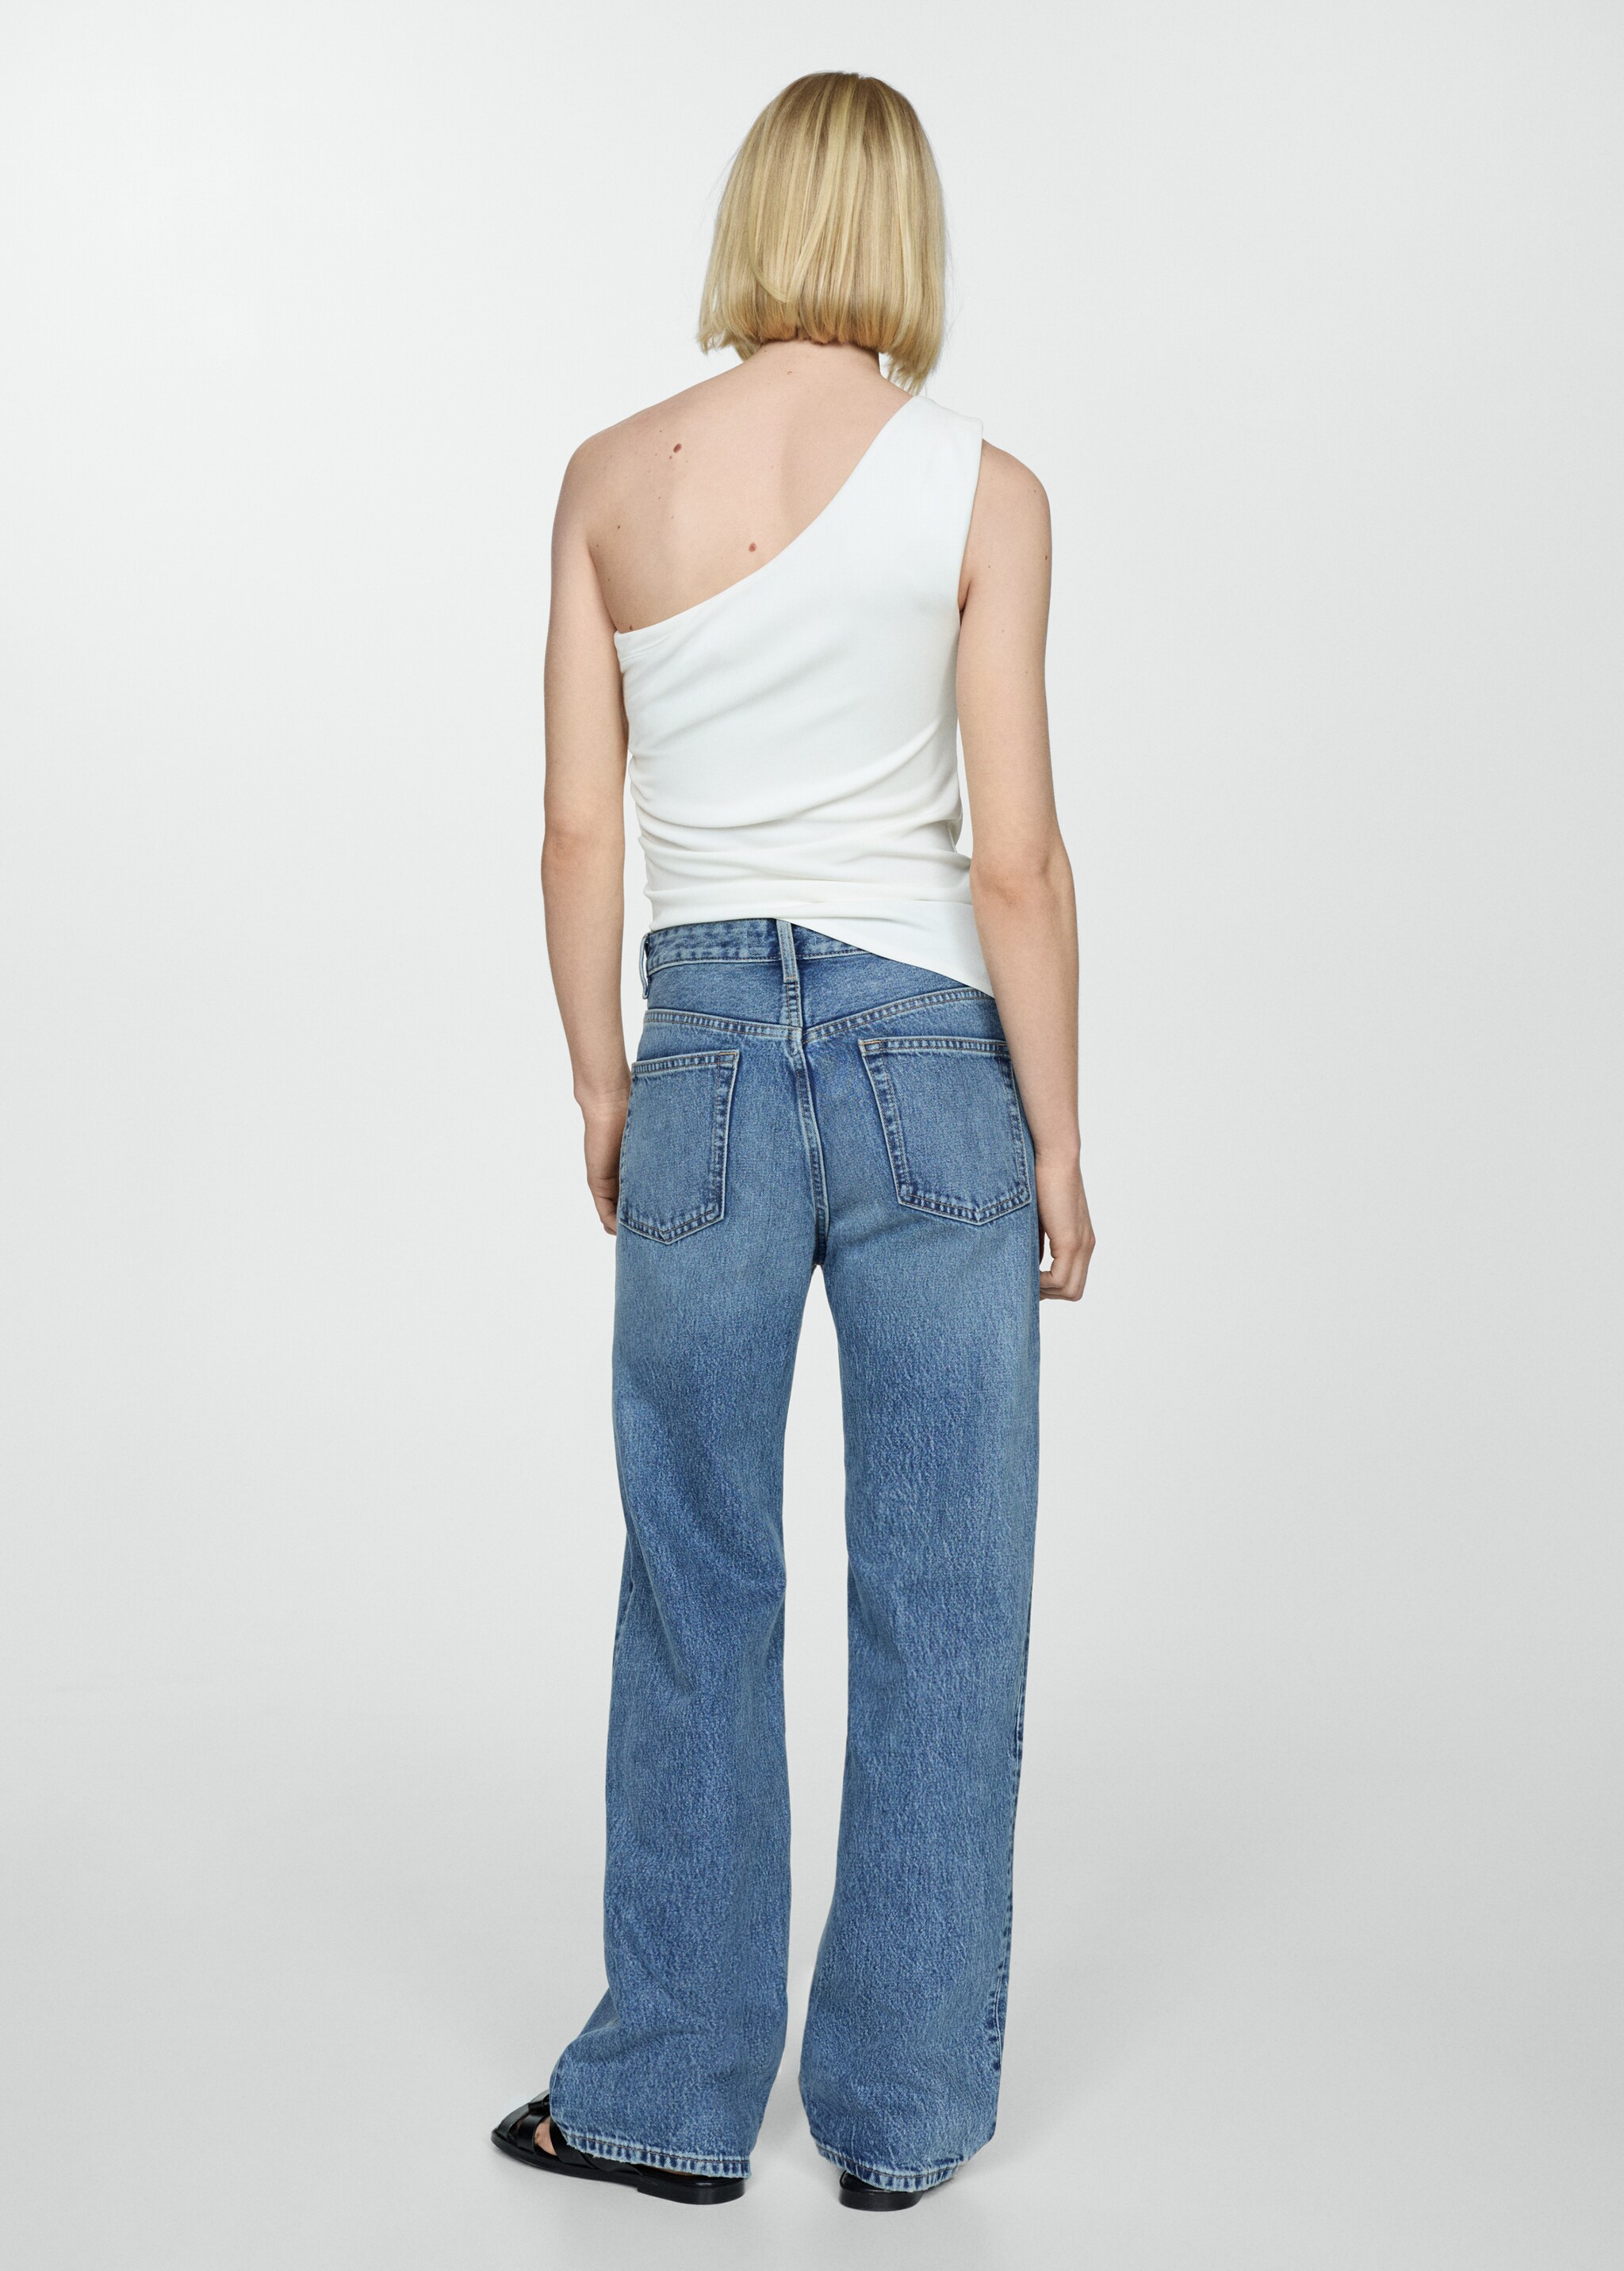 Jeans retos com cintura de altura média - Verso do artigo